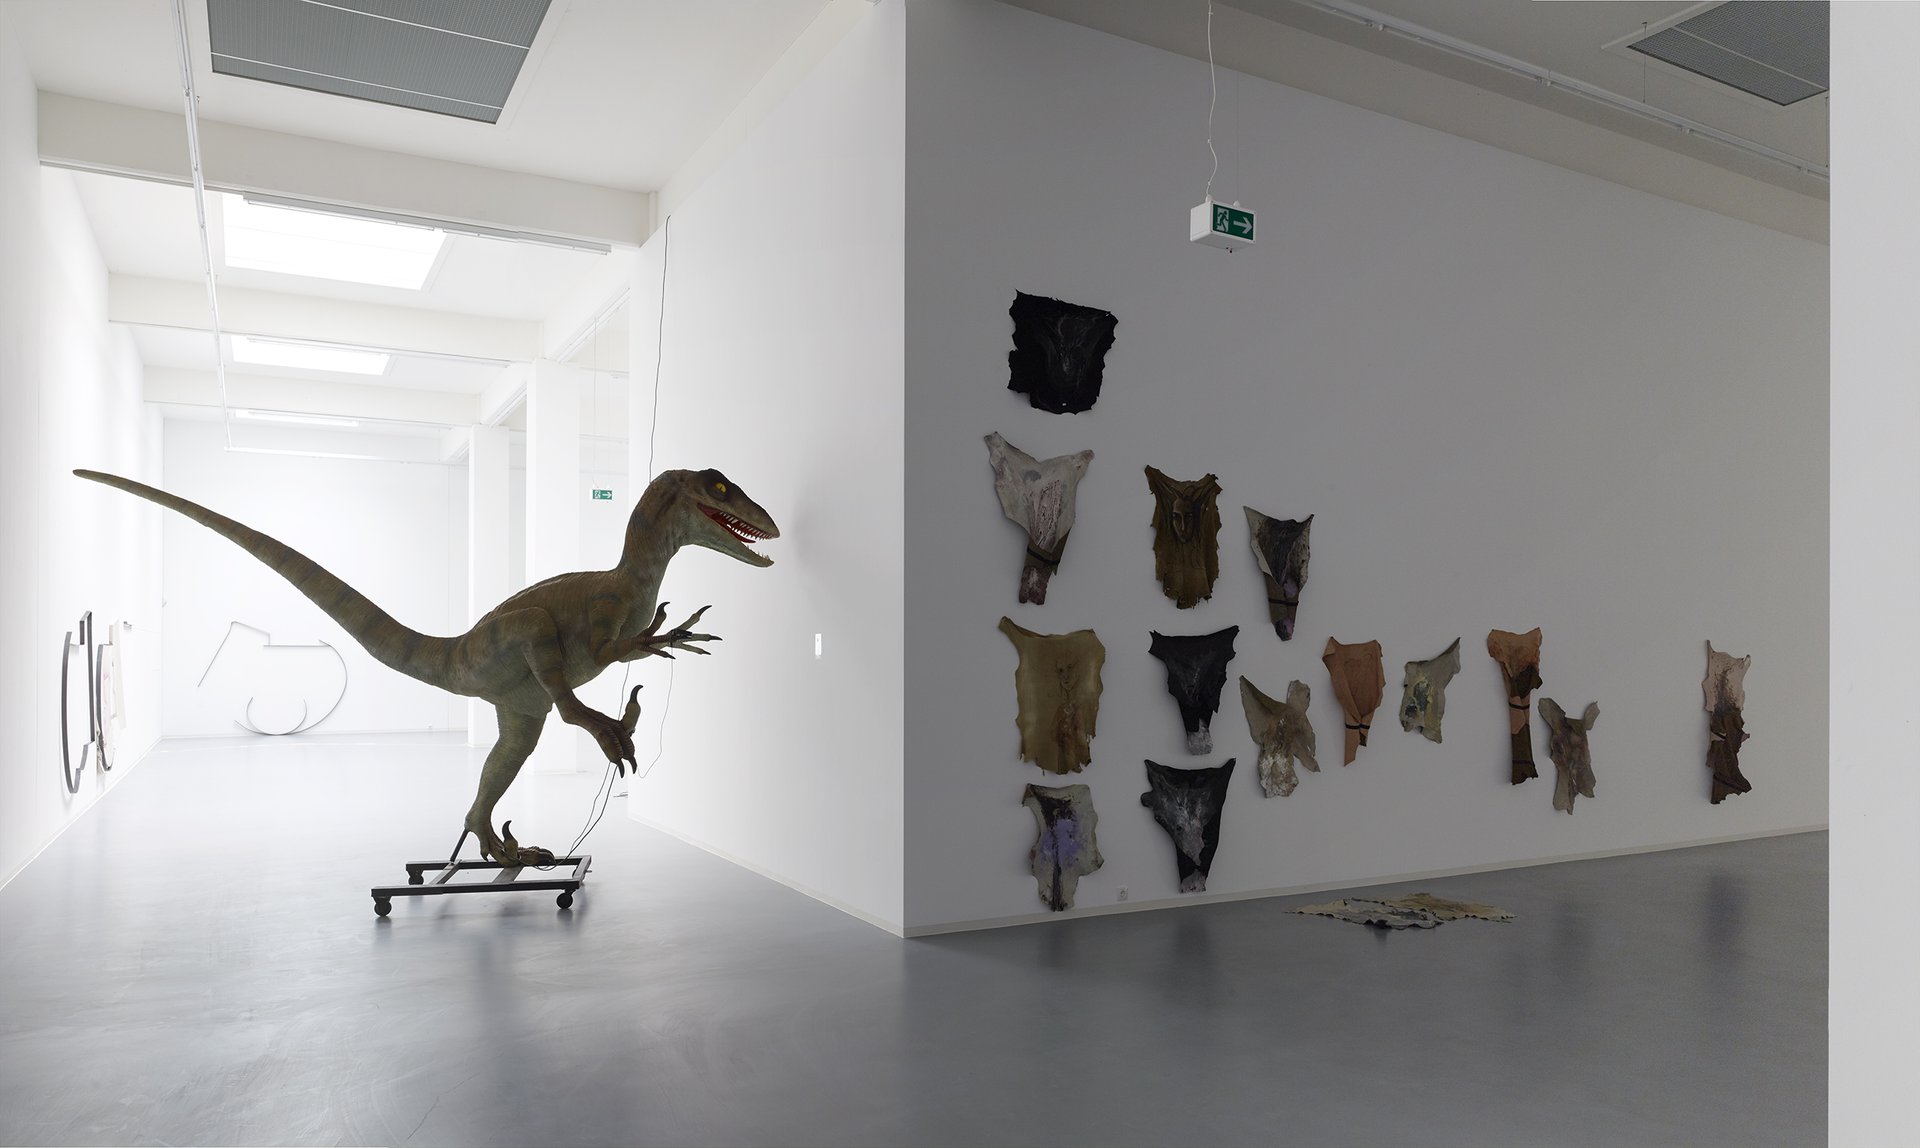 Raphaela Vogel, Installationsansicht, 2015, Bonner Kunstverein, Courtesy die Künstlerin und BQ, Berlin. Photo: Simon Vogel